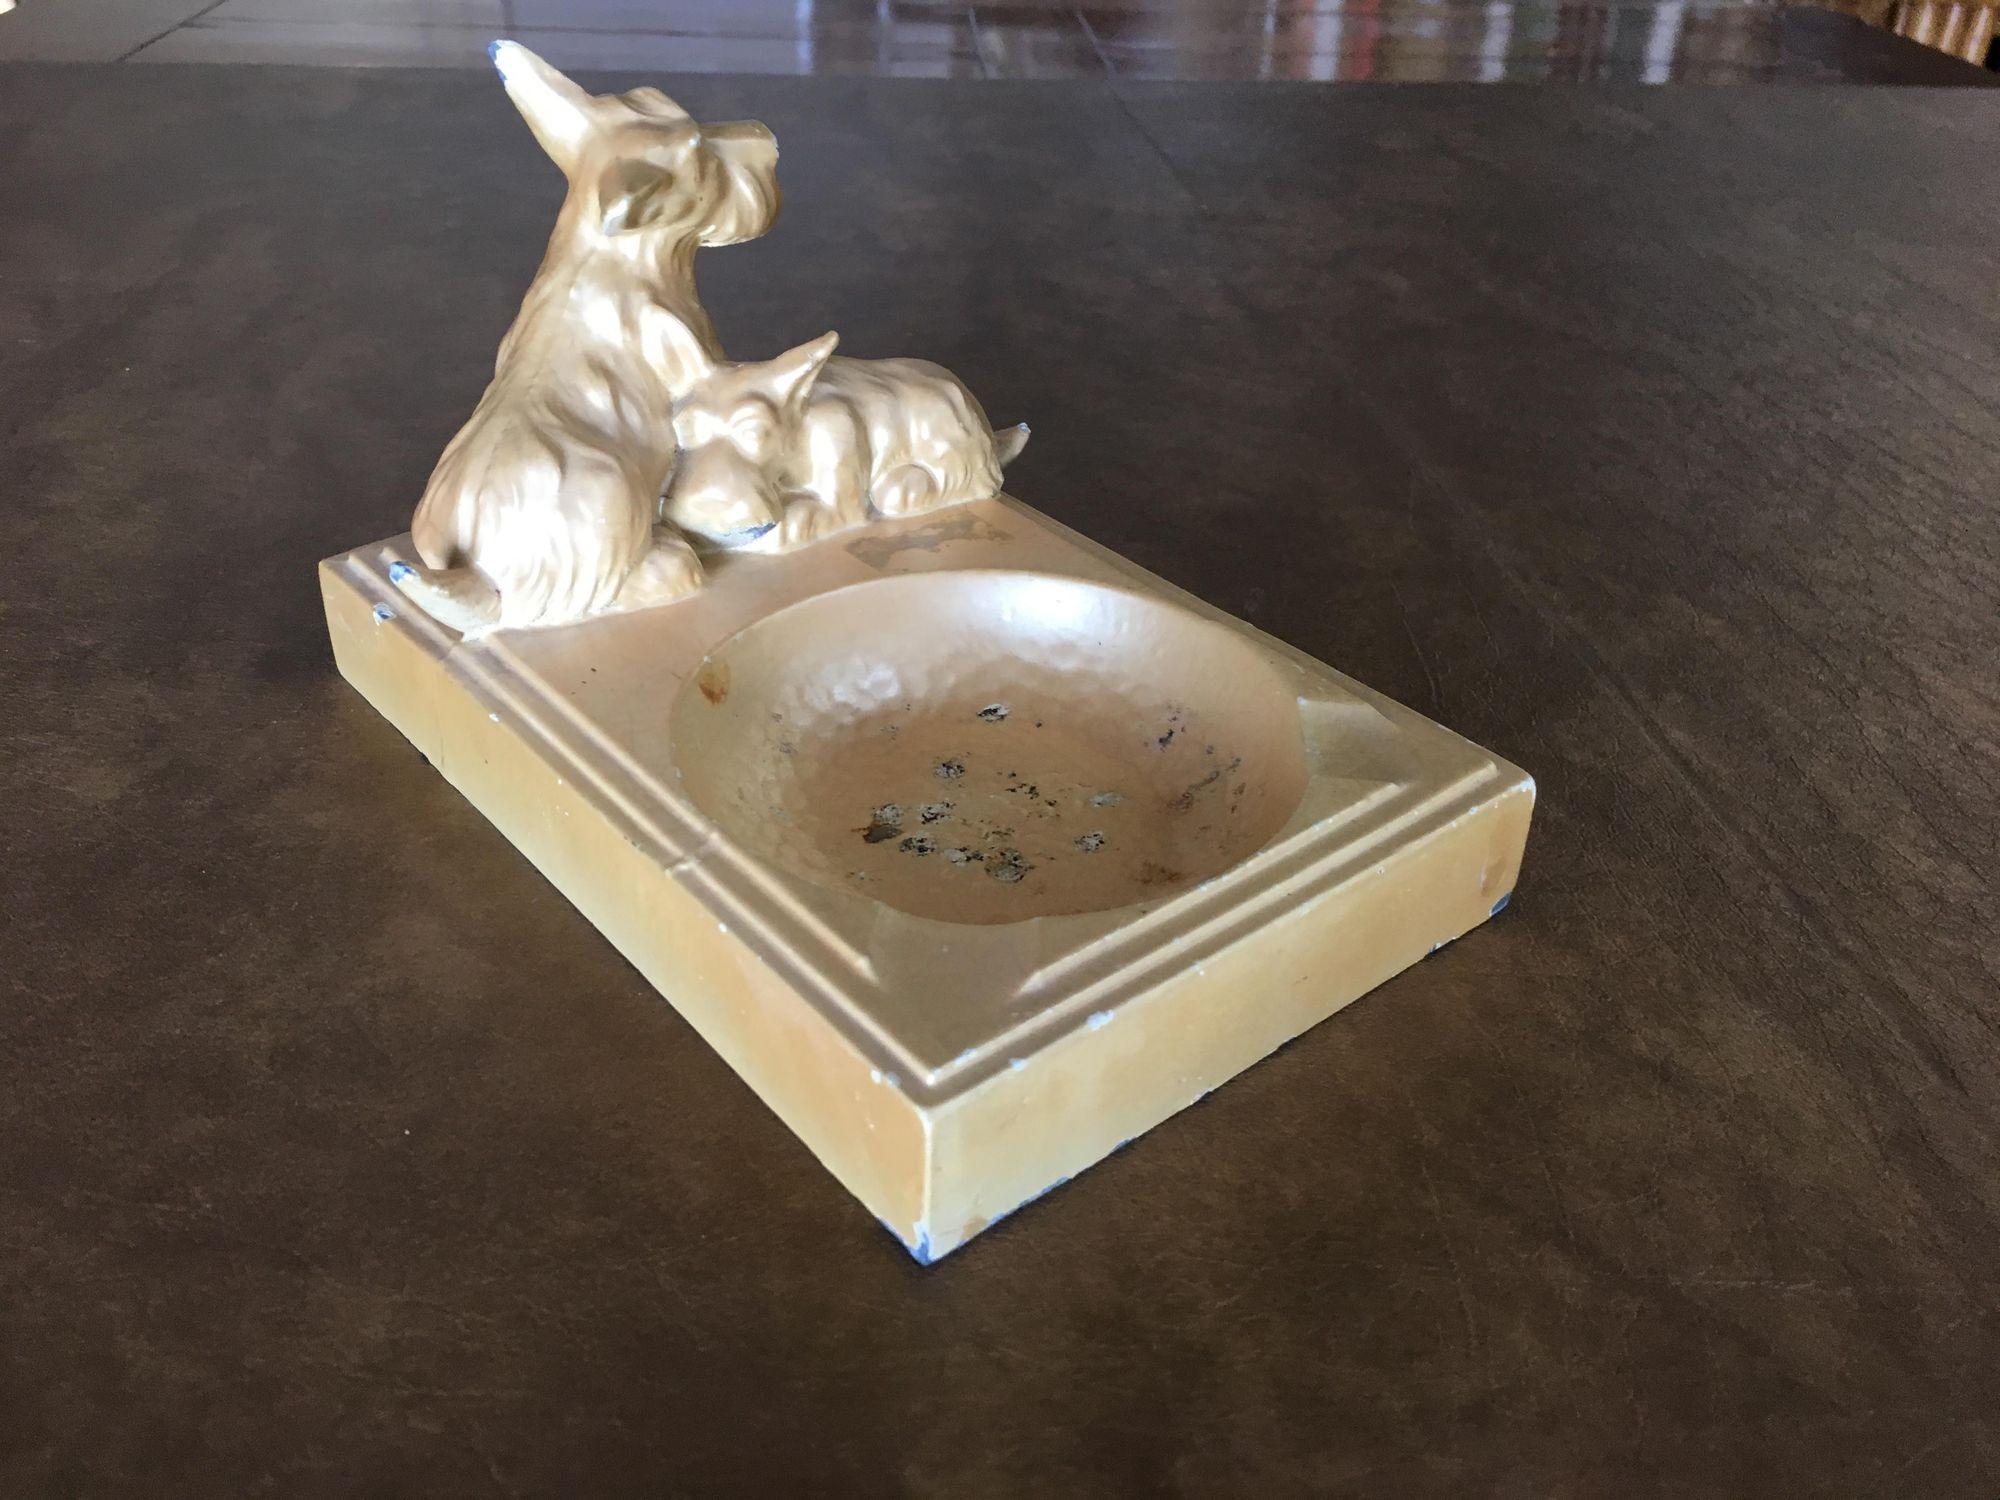 Cendrier Art Déco en métal émaillé beige en forme de chien terrier avec porte-cigarette et 2 chiens sculptés sur le dessus. Cette pièce présente une certaine usure dans le bol du cendrier et le long de ses bords.

Dimensions :
4